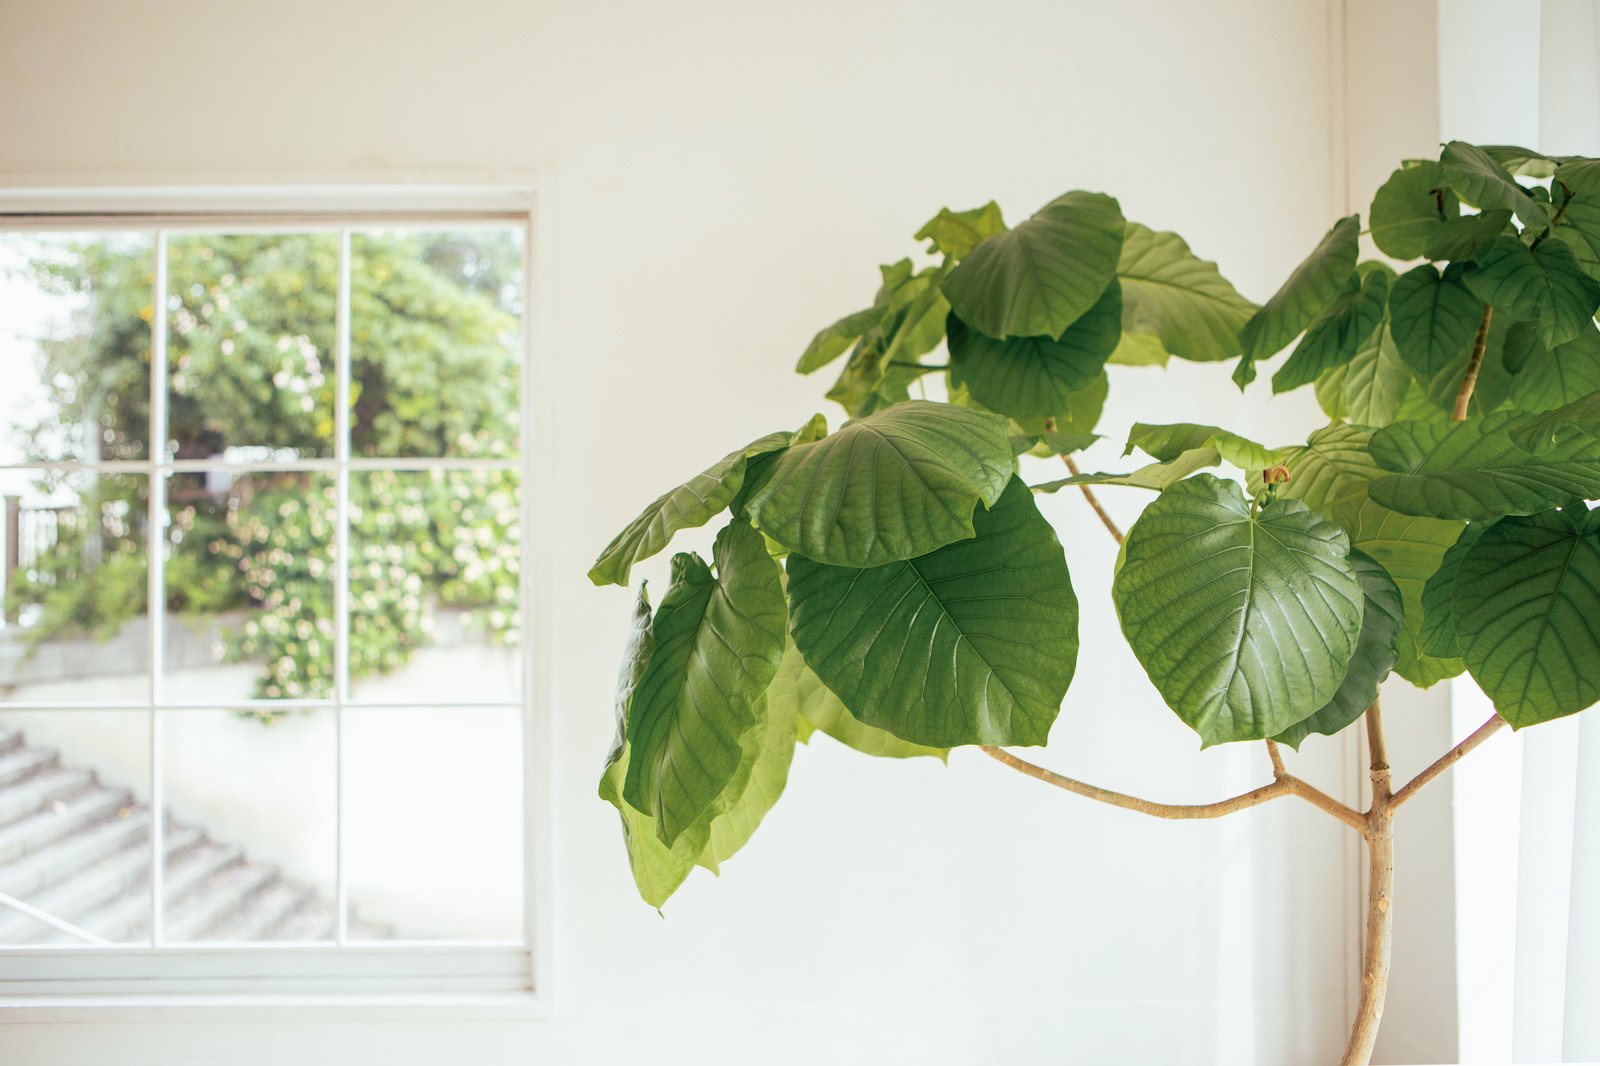 「窓際に置かれた観葉植物」の写真